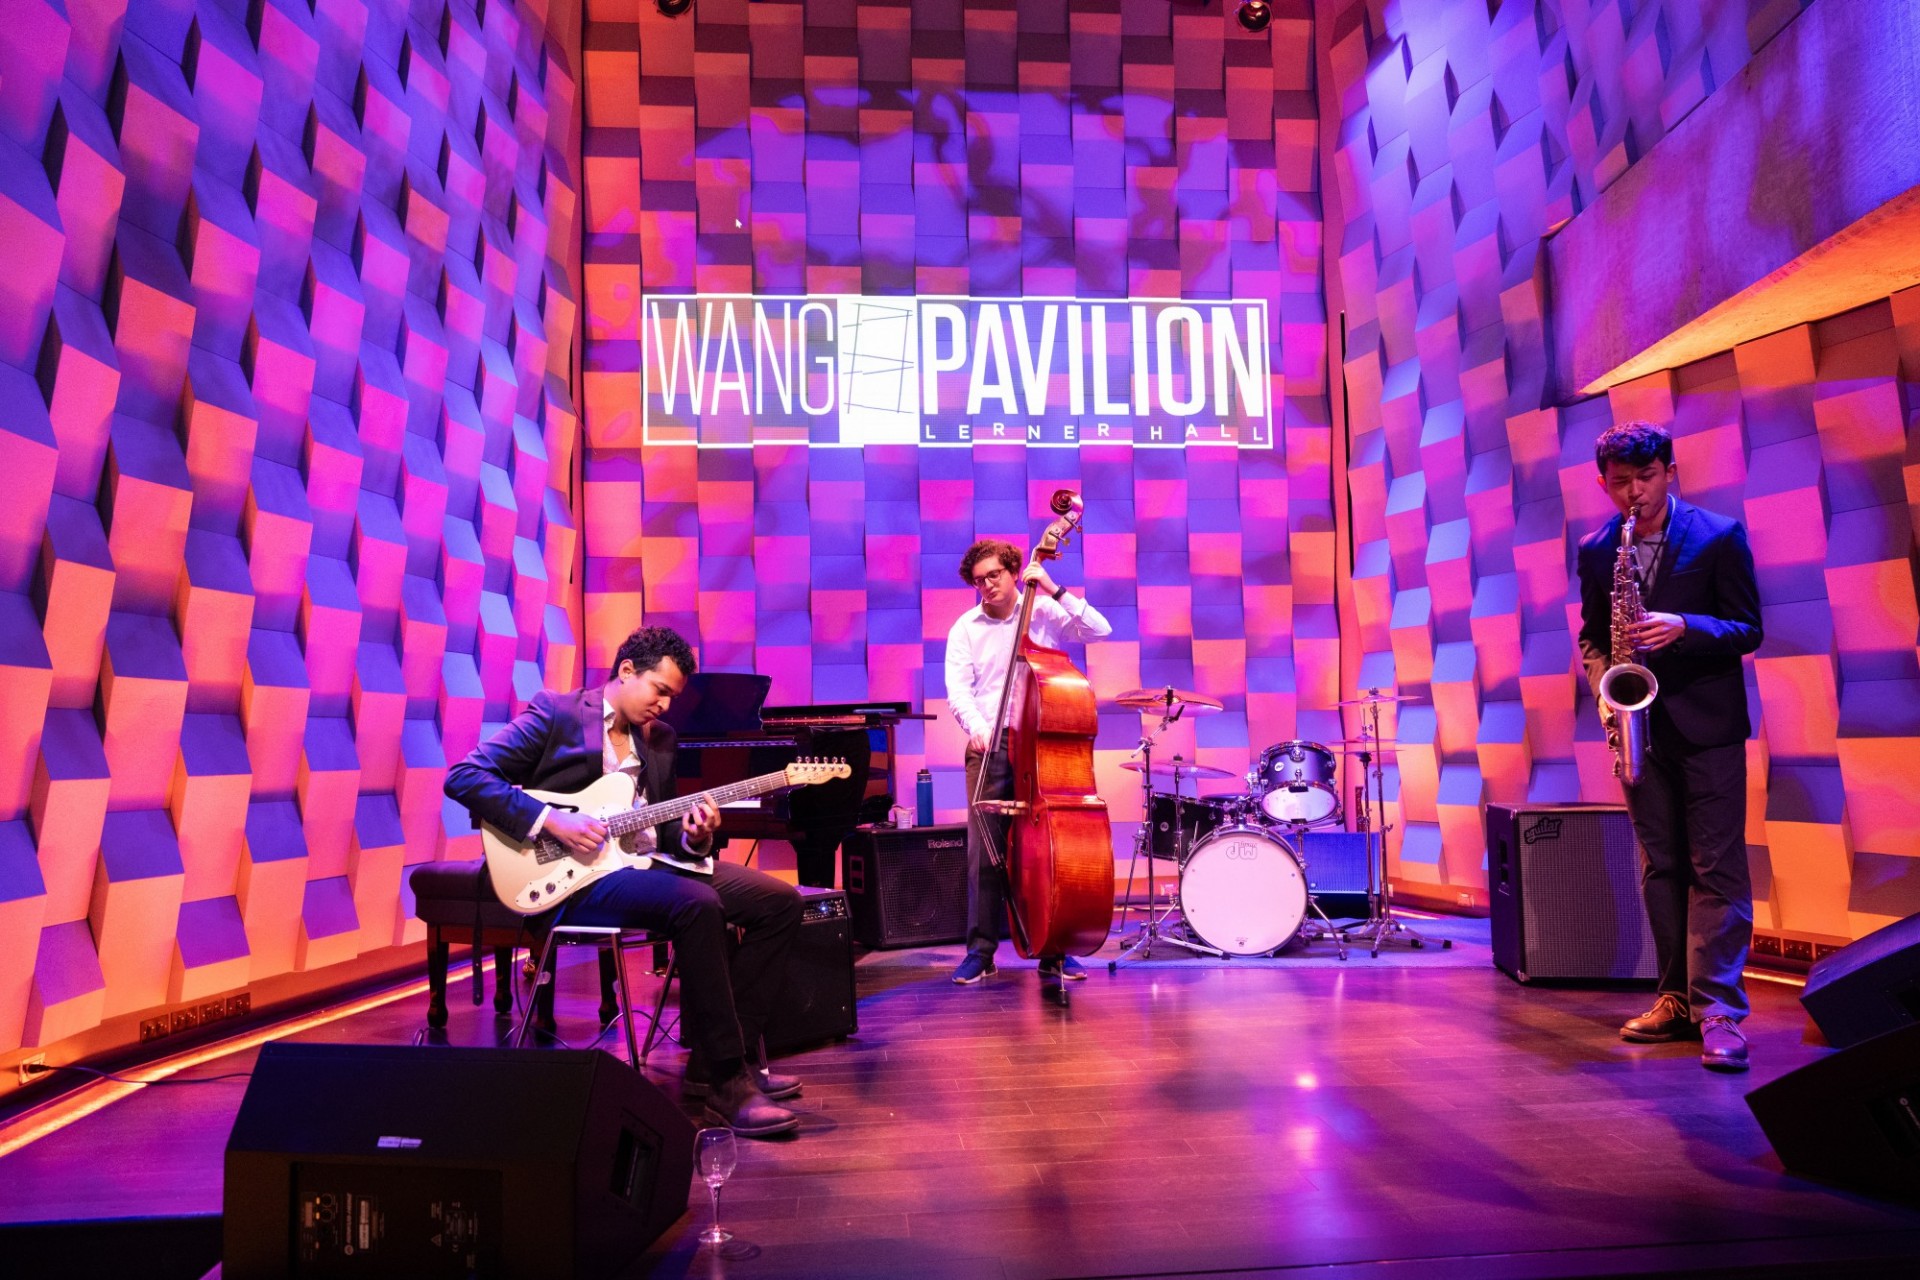 Wang Pavilion Jazz ensemble